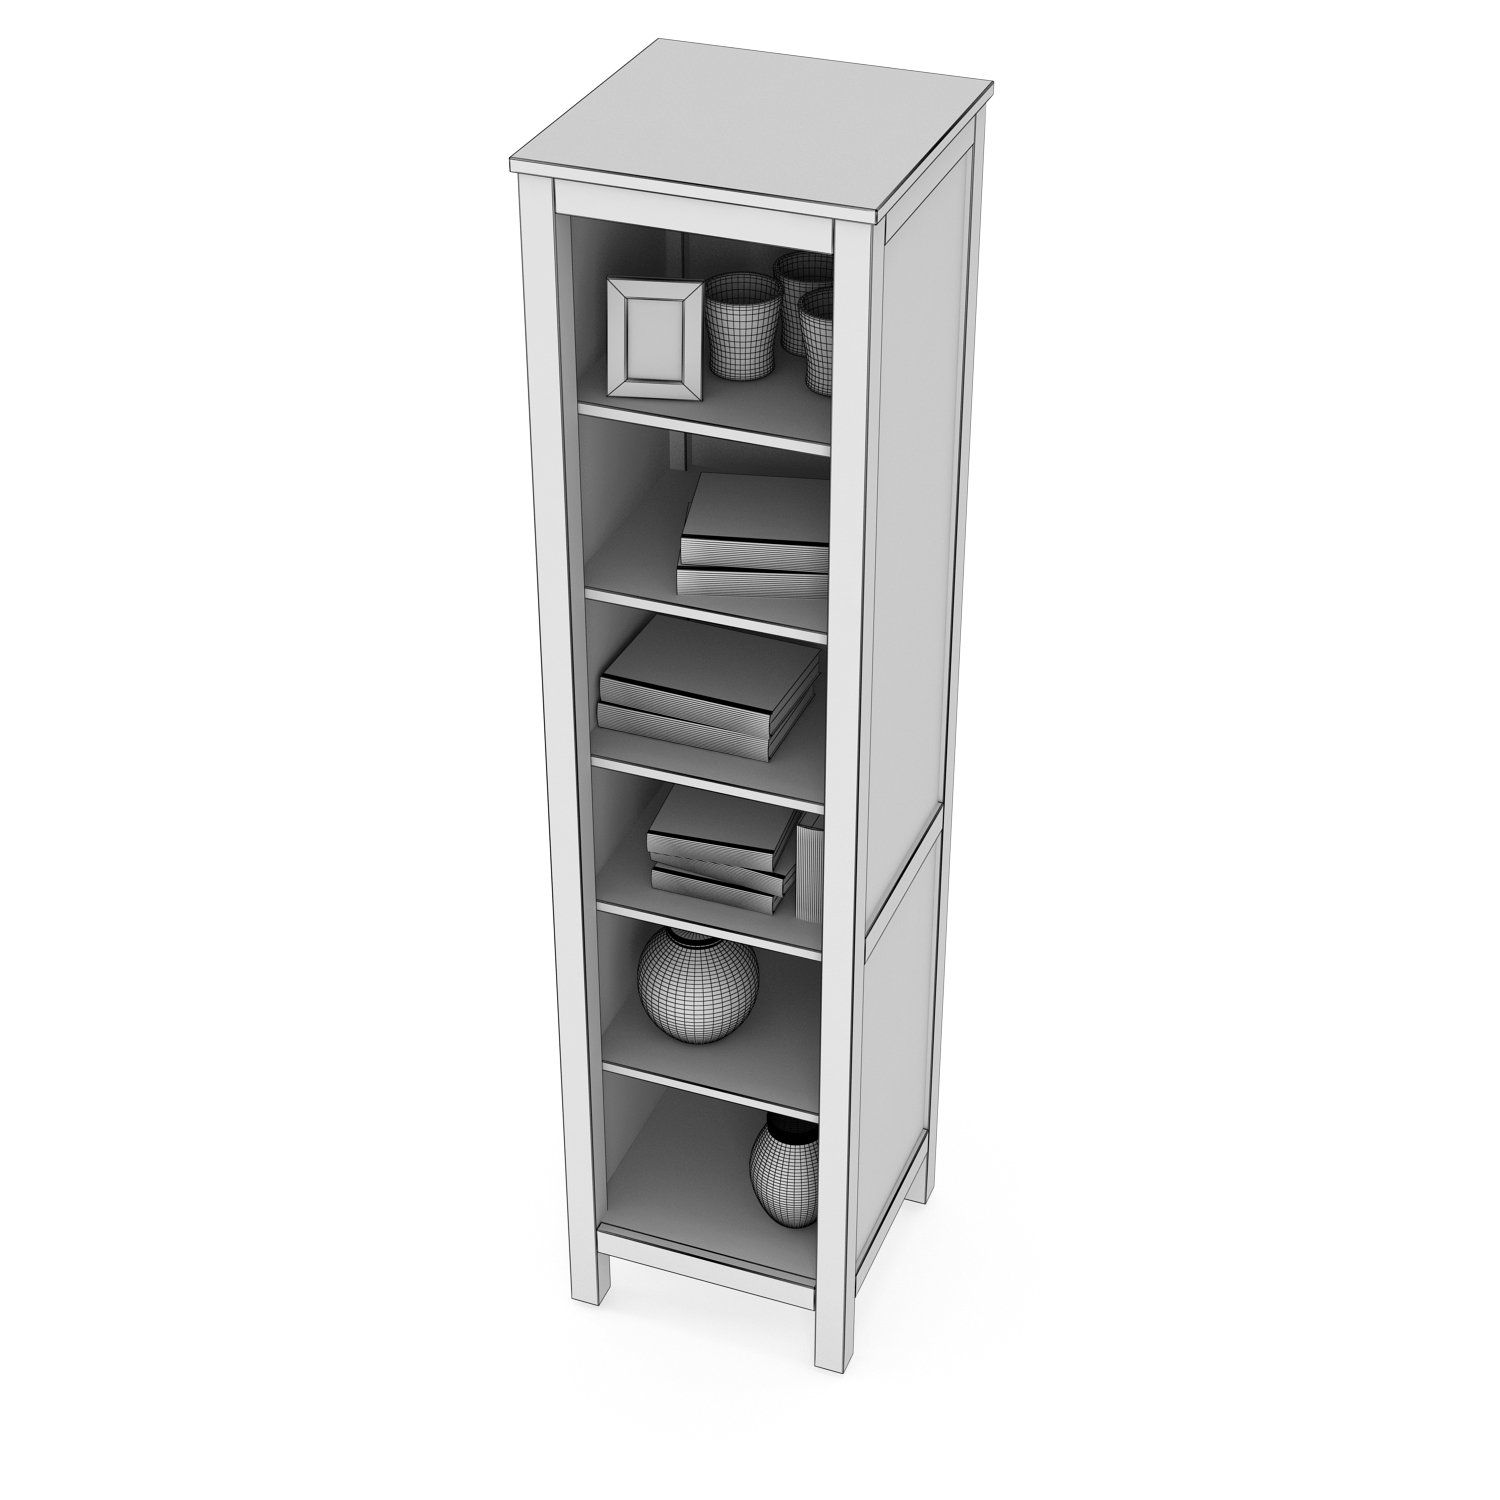 Ikea Hemnes Bookcase And Glass Door Cabinet 3d Model In Household